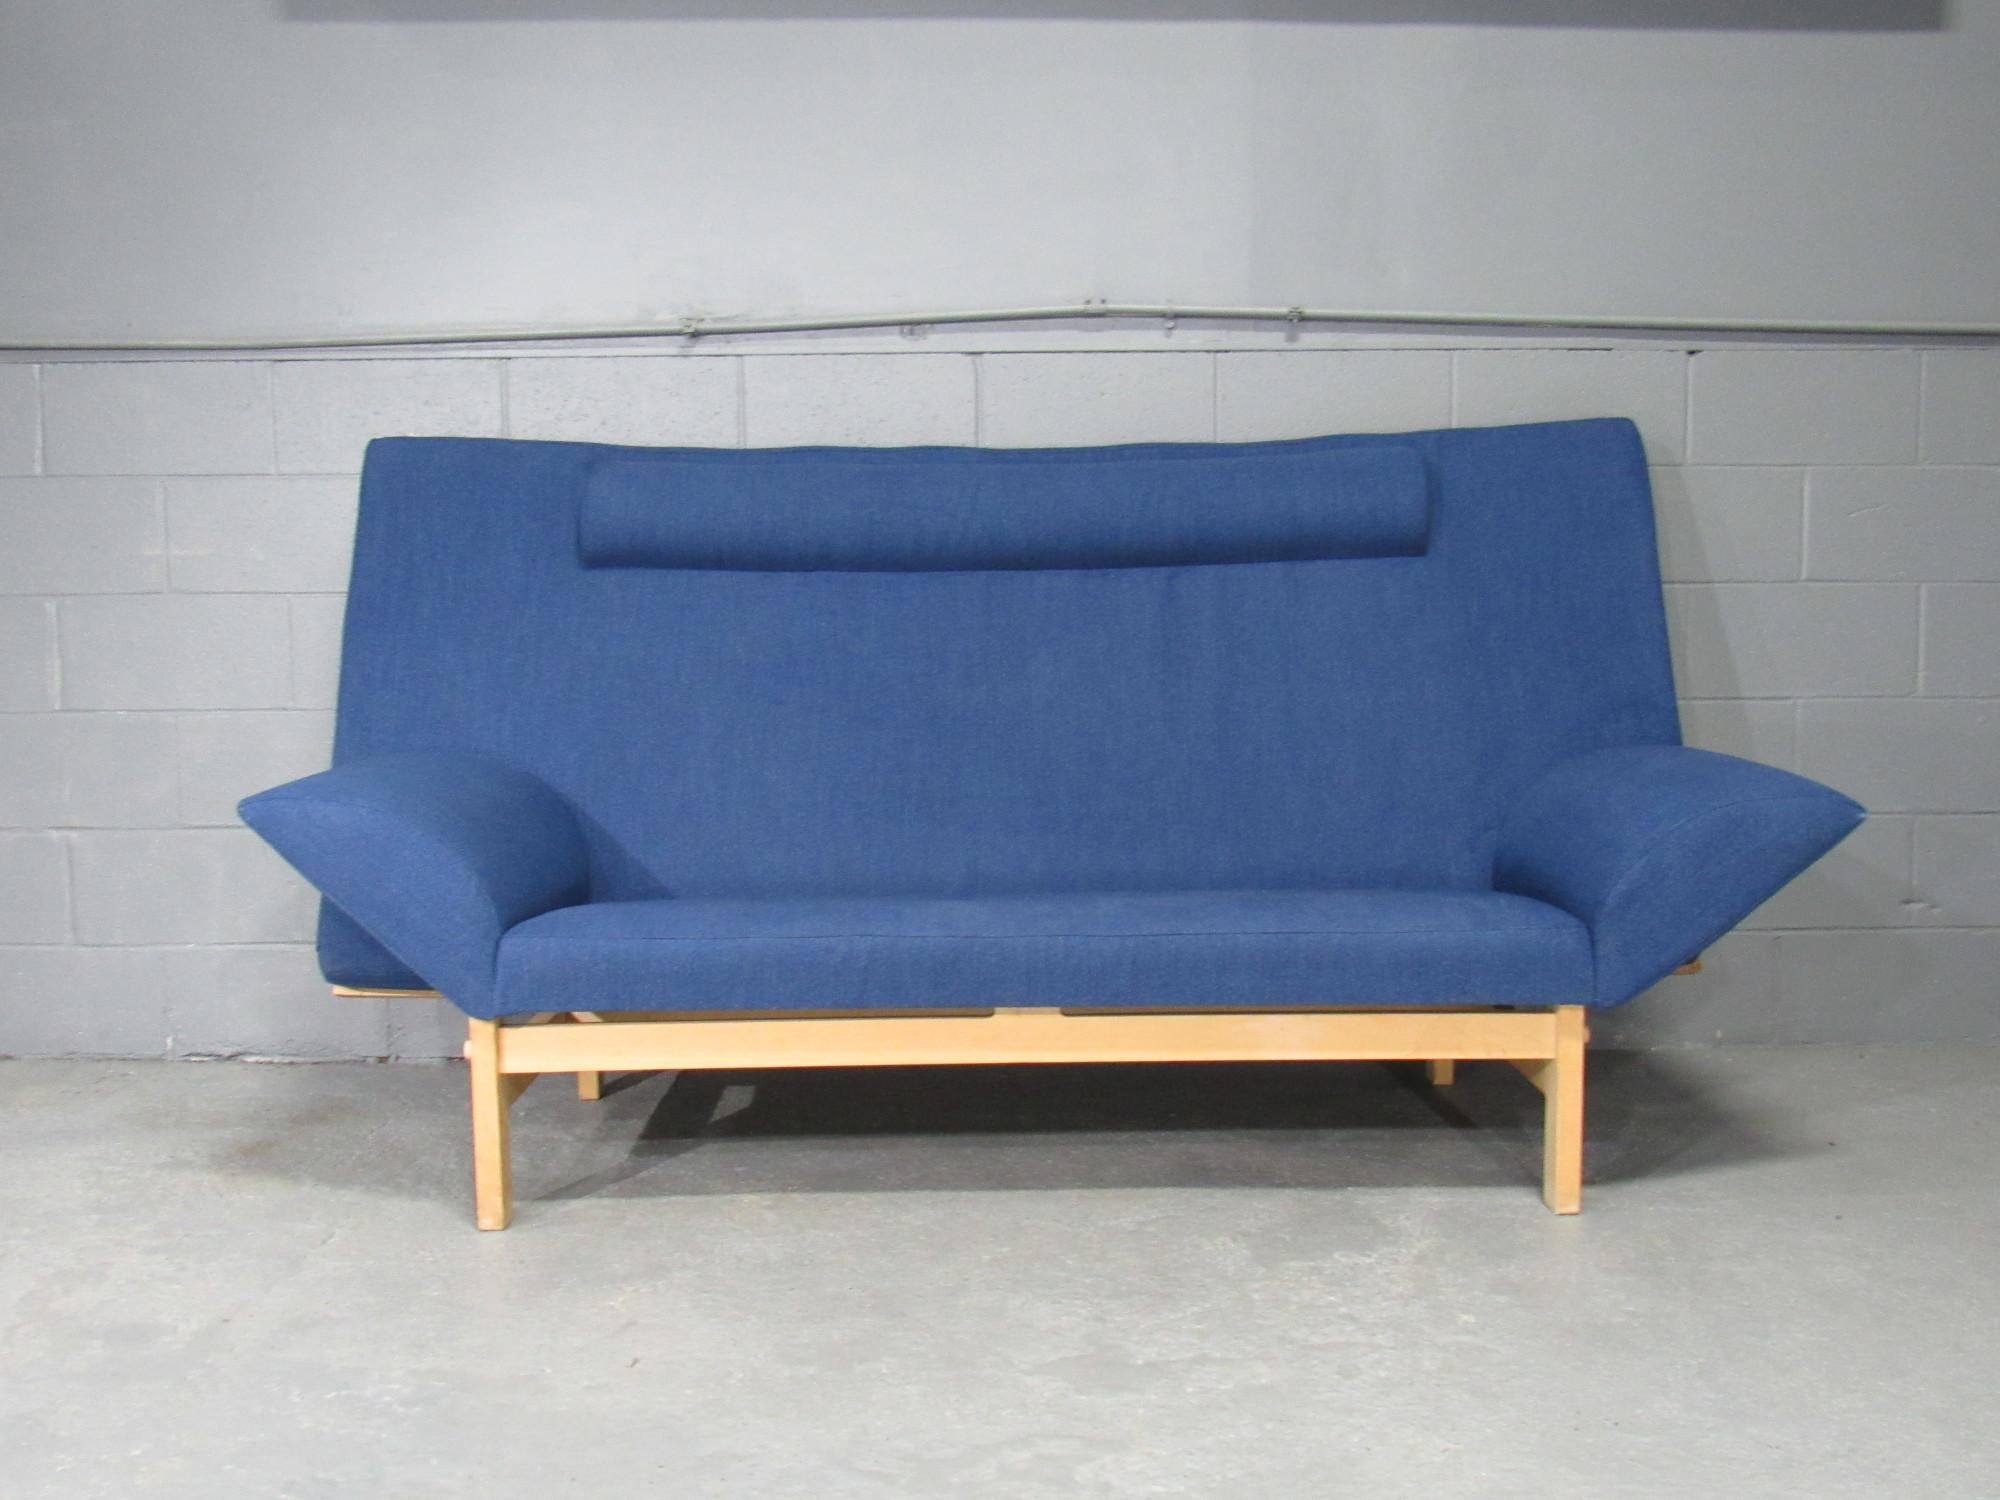 Wool September Sofa Model Ge-299 by Takashi Okamura & Erik Marquardsen for GETAMA